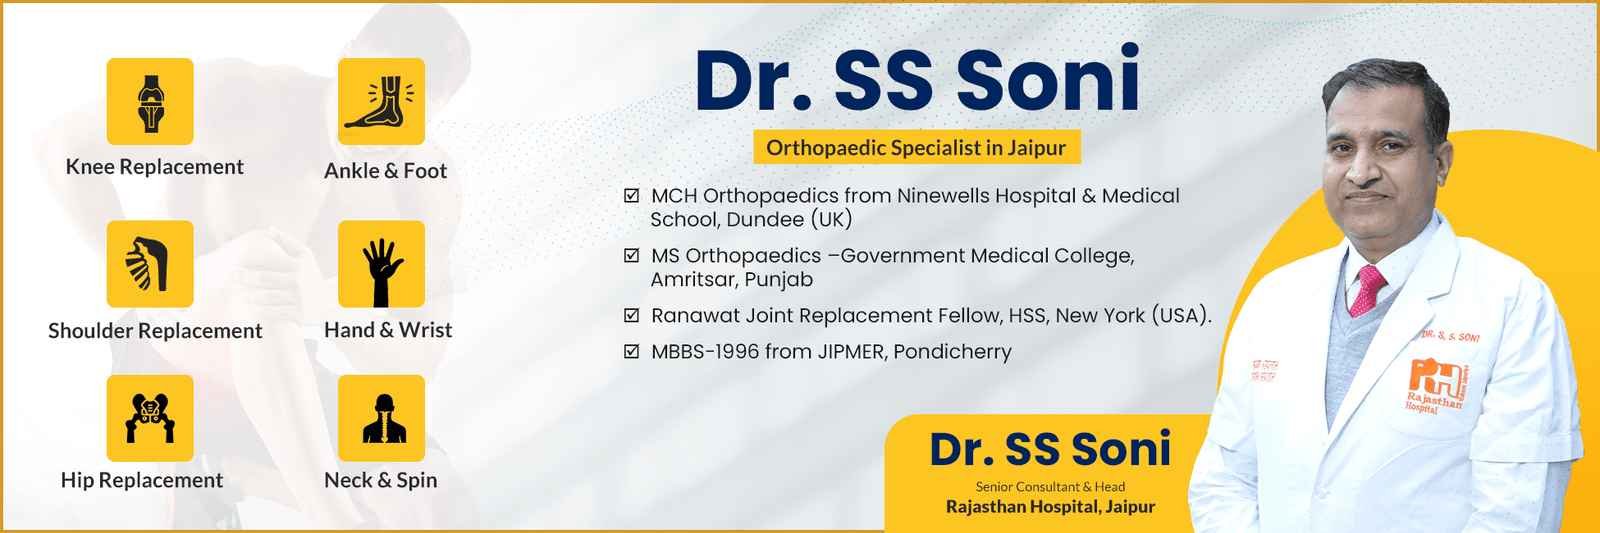 Best Orthopedic Doctor in Jaipur Dr. SS SONI